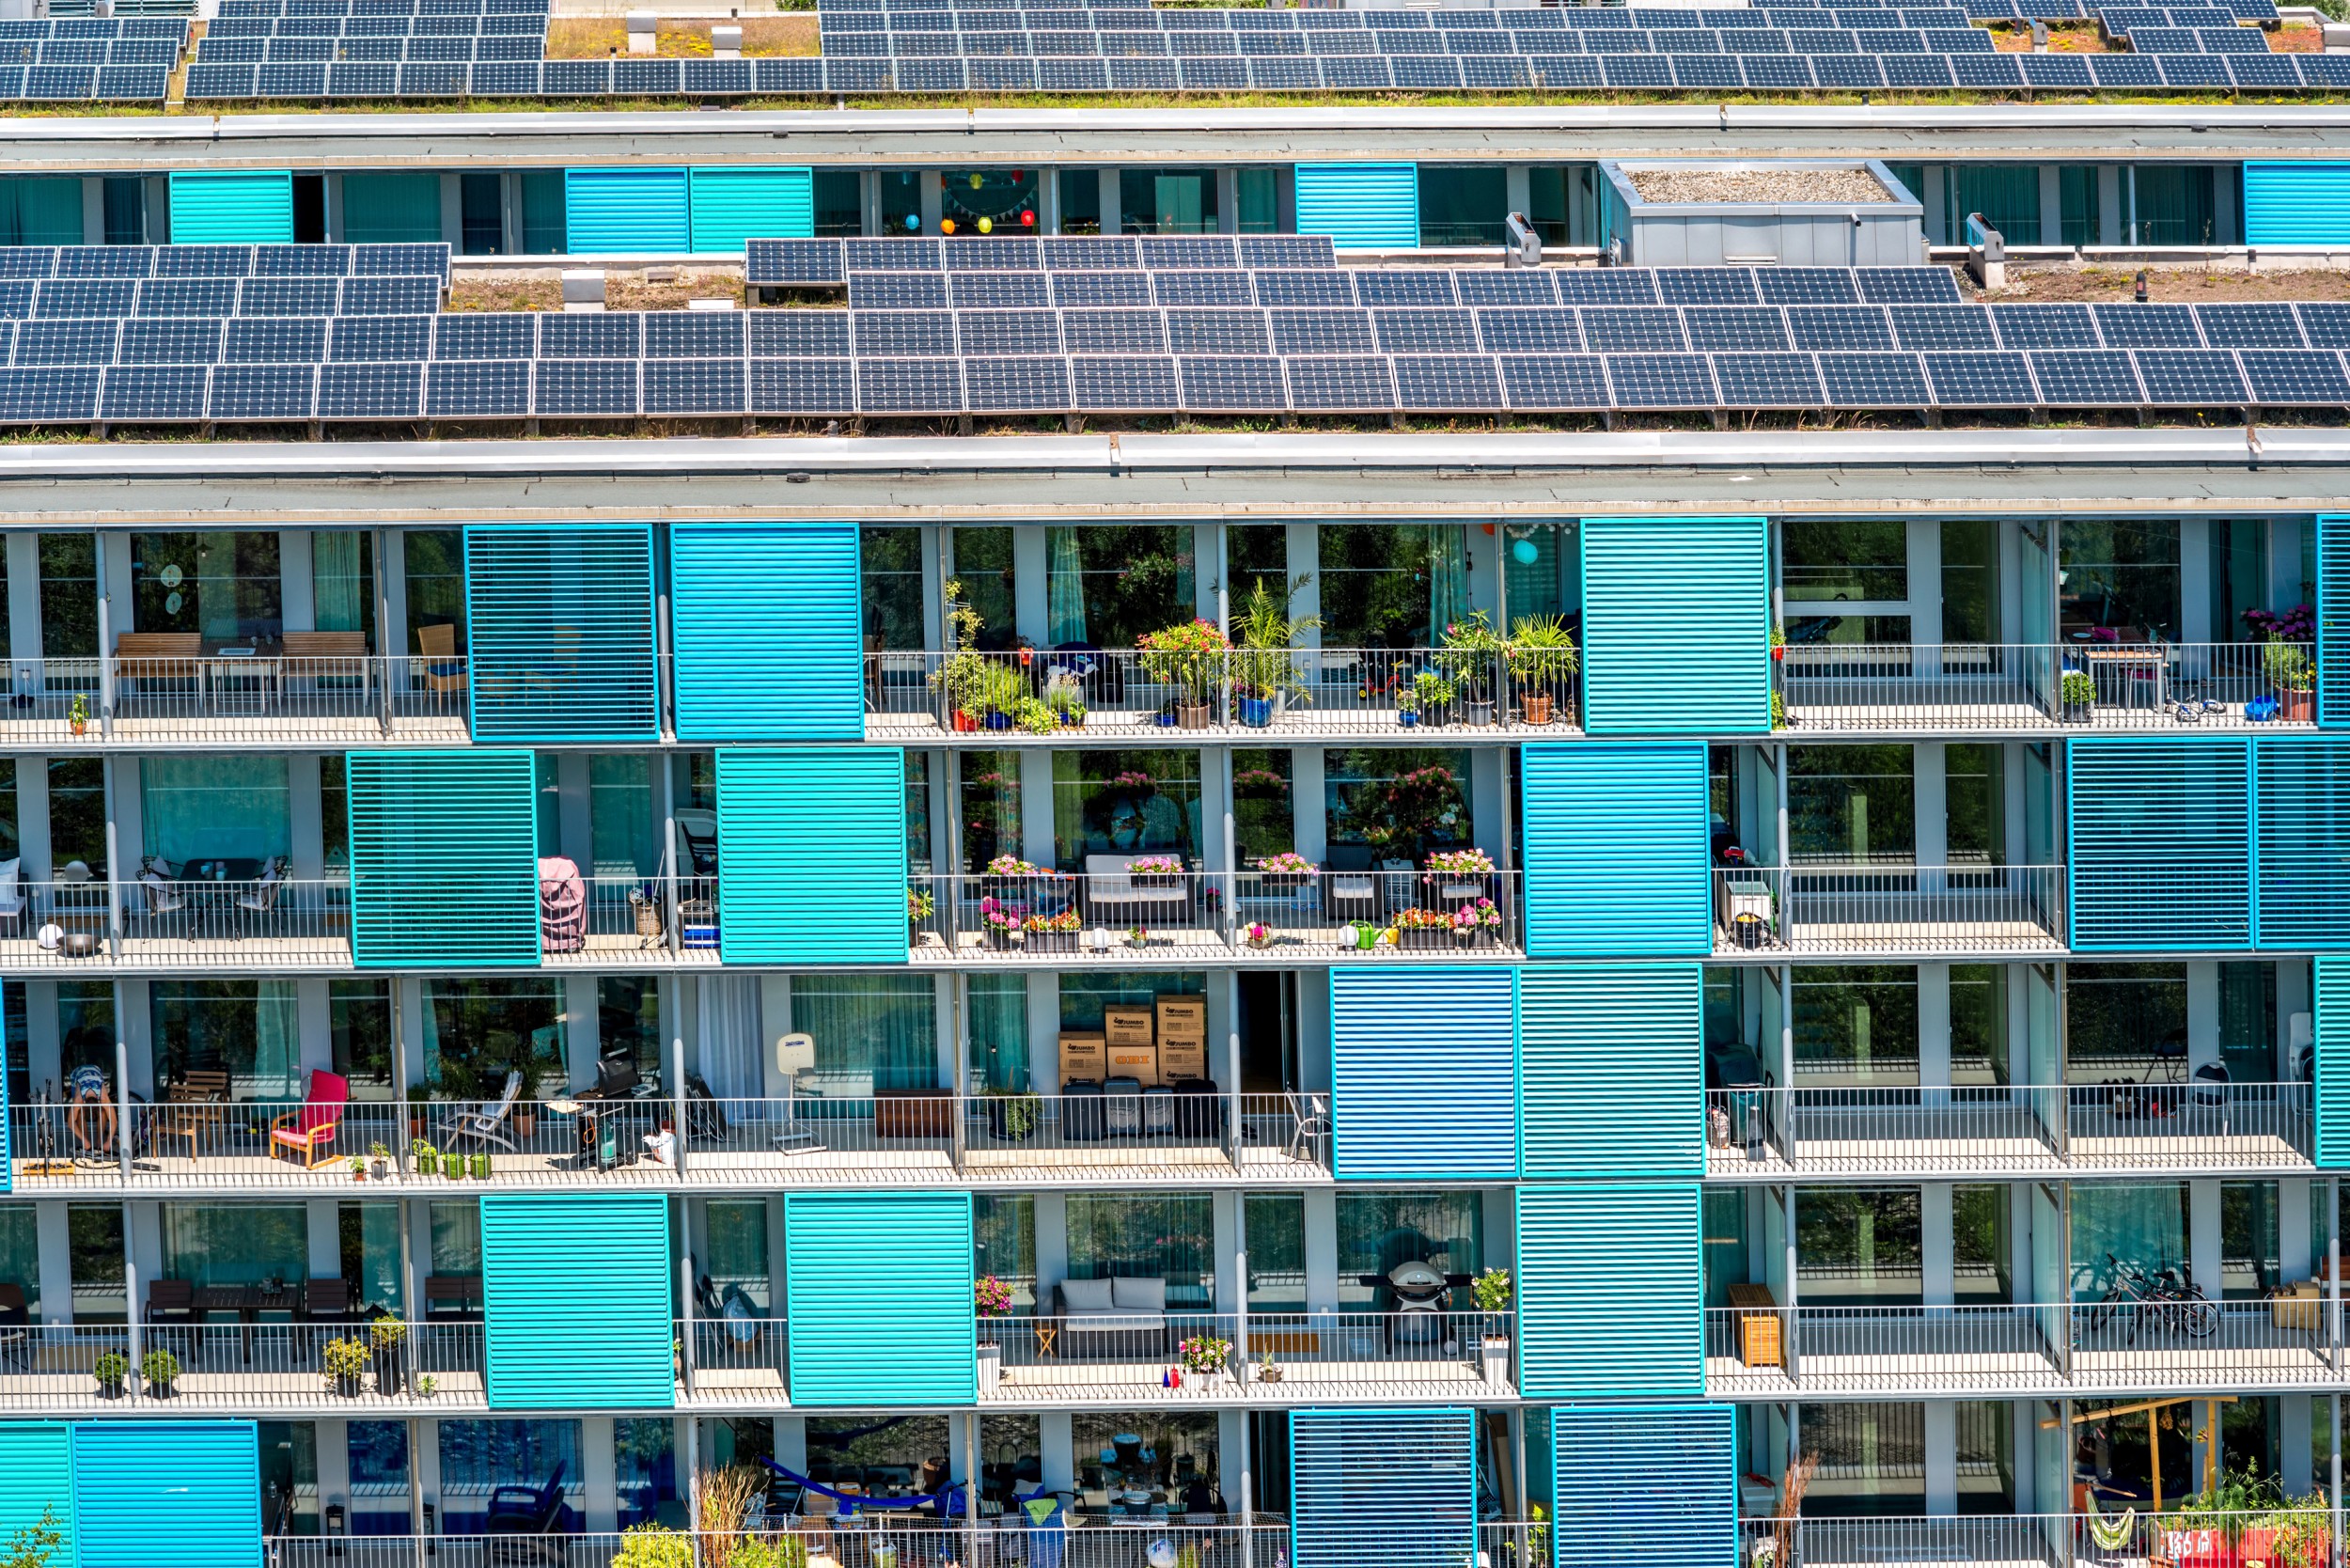 Die Idee, mit seinen Nachbarn erneuerbare Energie zu teilen, kommt bei der Schweizer Bevölkerung gut an.